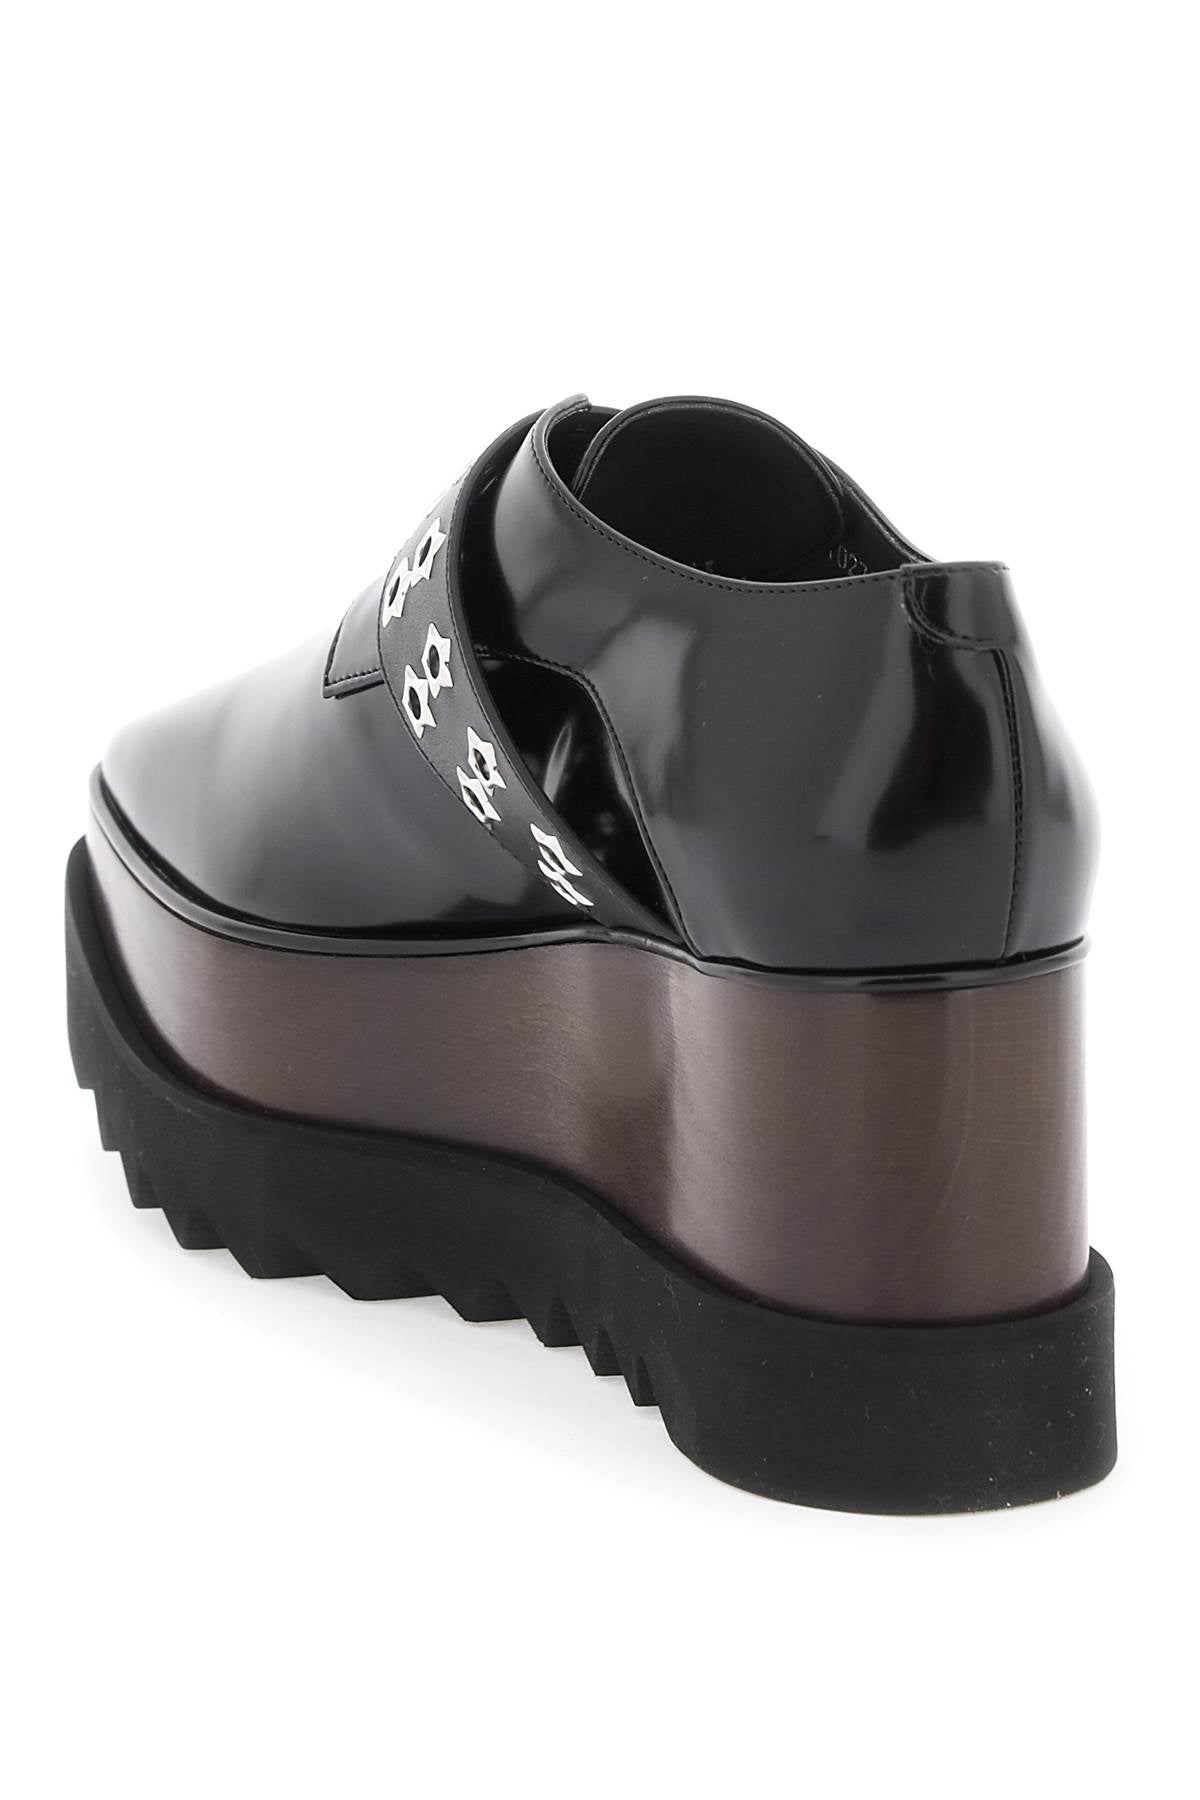 Stella Mc Cartney Elyse Lace Up Shoes